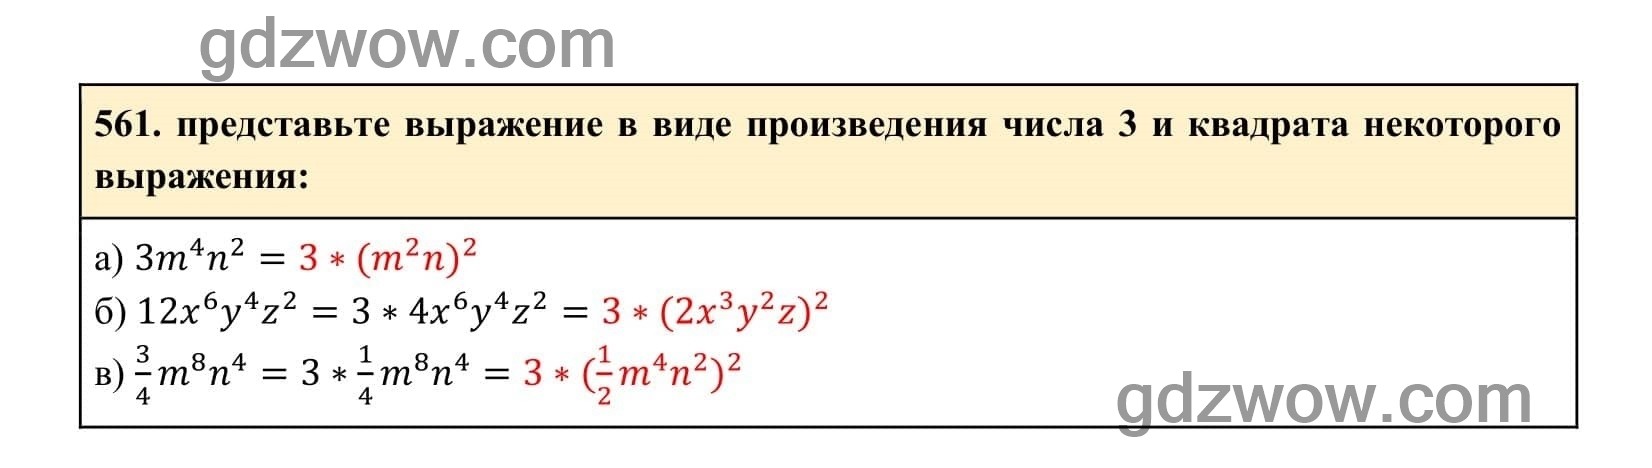 Упражнение 561 - ГДЗ по Алгебре 7 класс Учебник Макарычев (решебник) - GDZwow